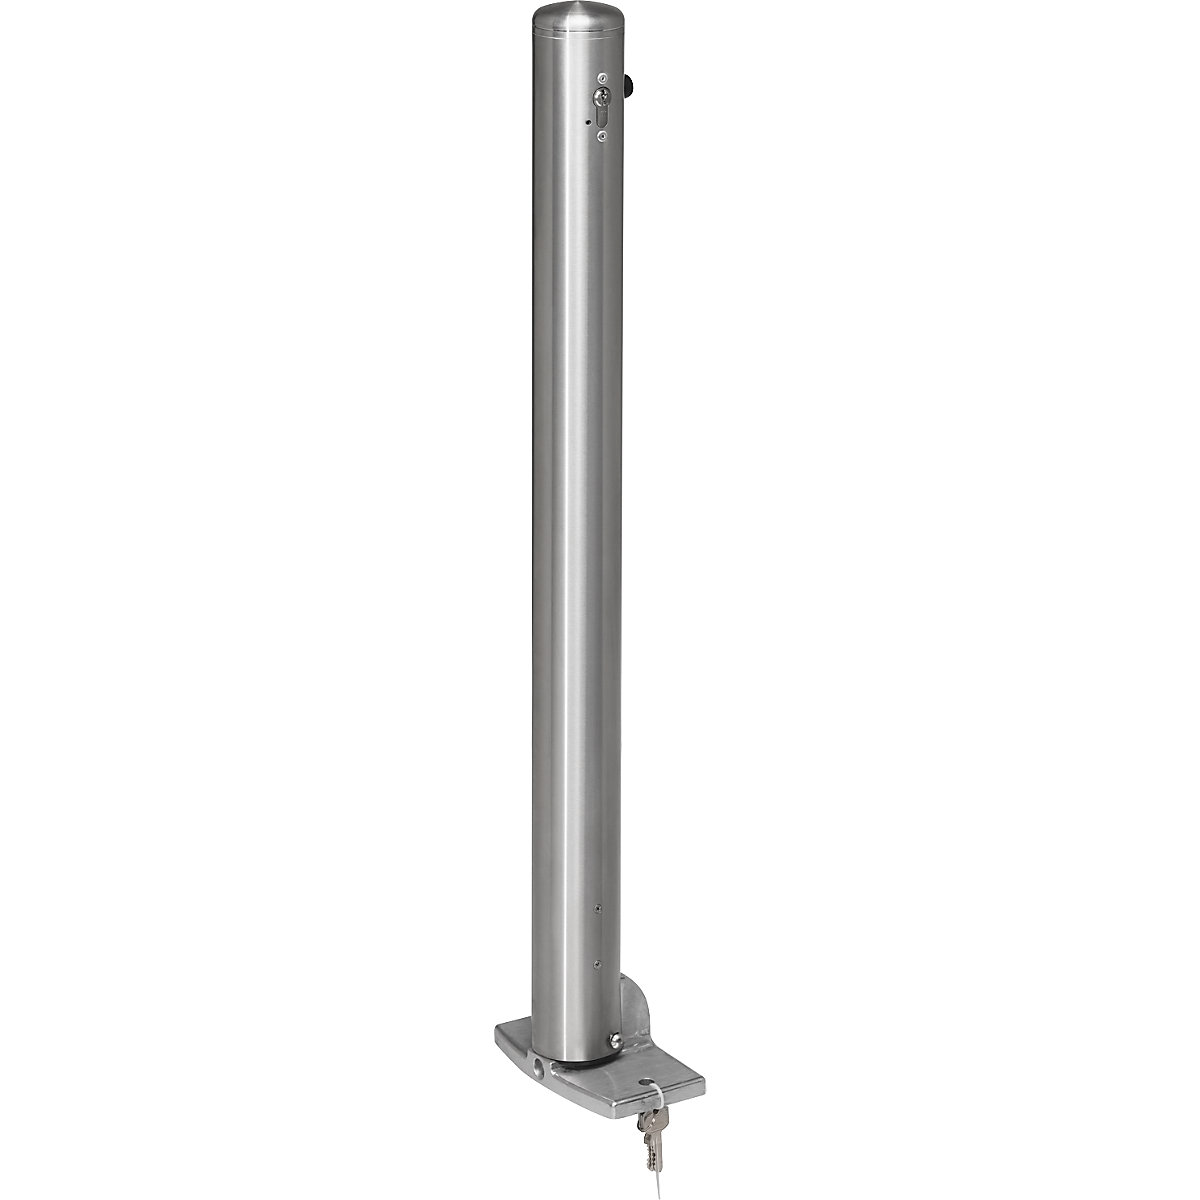 Stup za ograđivanje od nehrđajućeg čelika, s kapicom za zatvaranje, podnom pločom za pričvršćivanje tiplama, Ø 76 mm, profilni cilindar-6